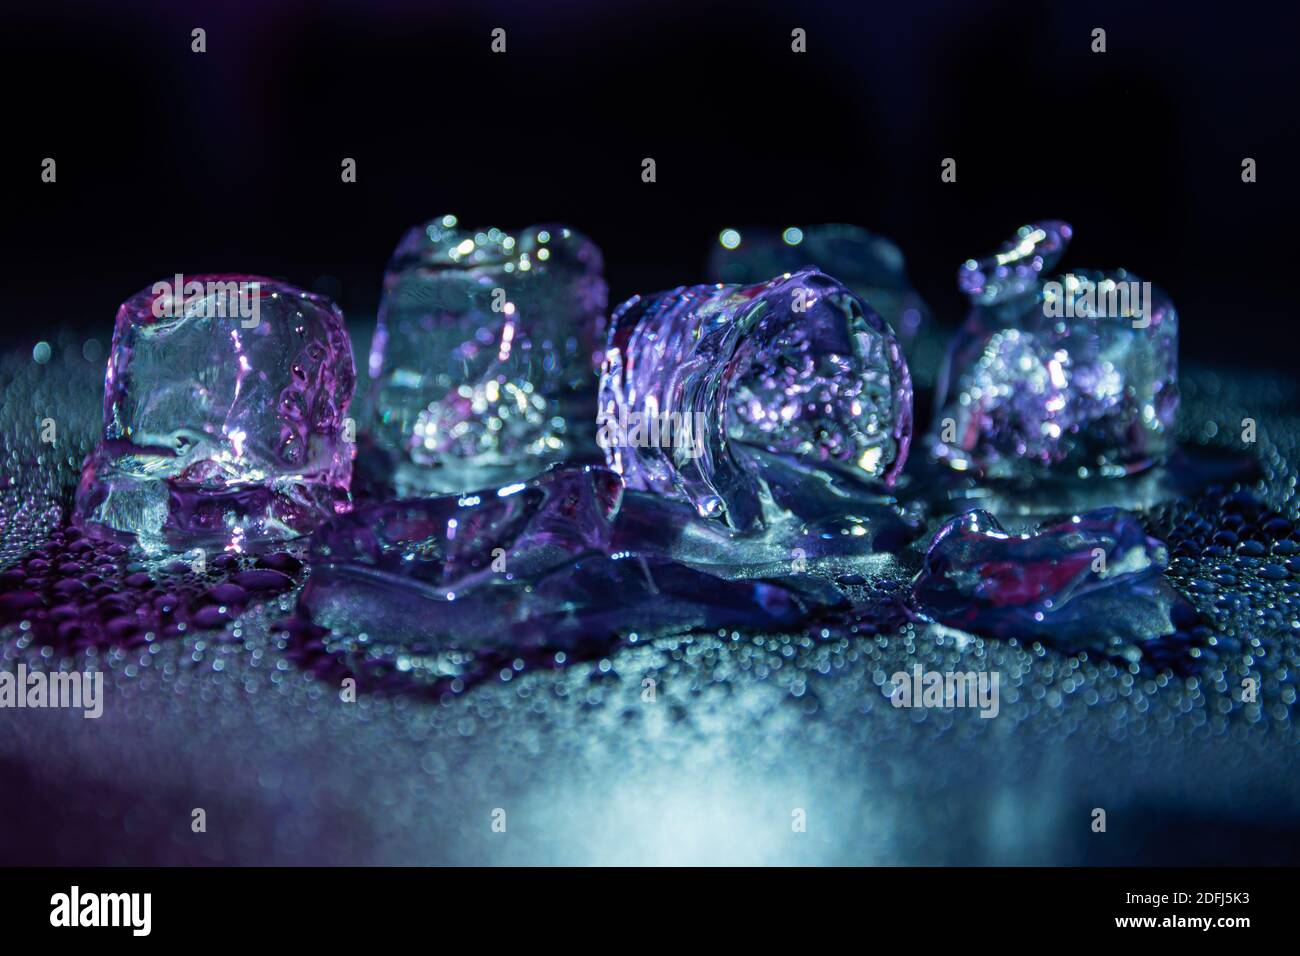 Schmelzen gefrorener Eiswürfel beleuchtet mit gradientenfarbigem LED-Licht  im Dunkeln Stockfotografie - Alamy